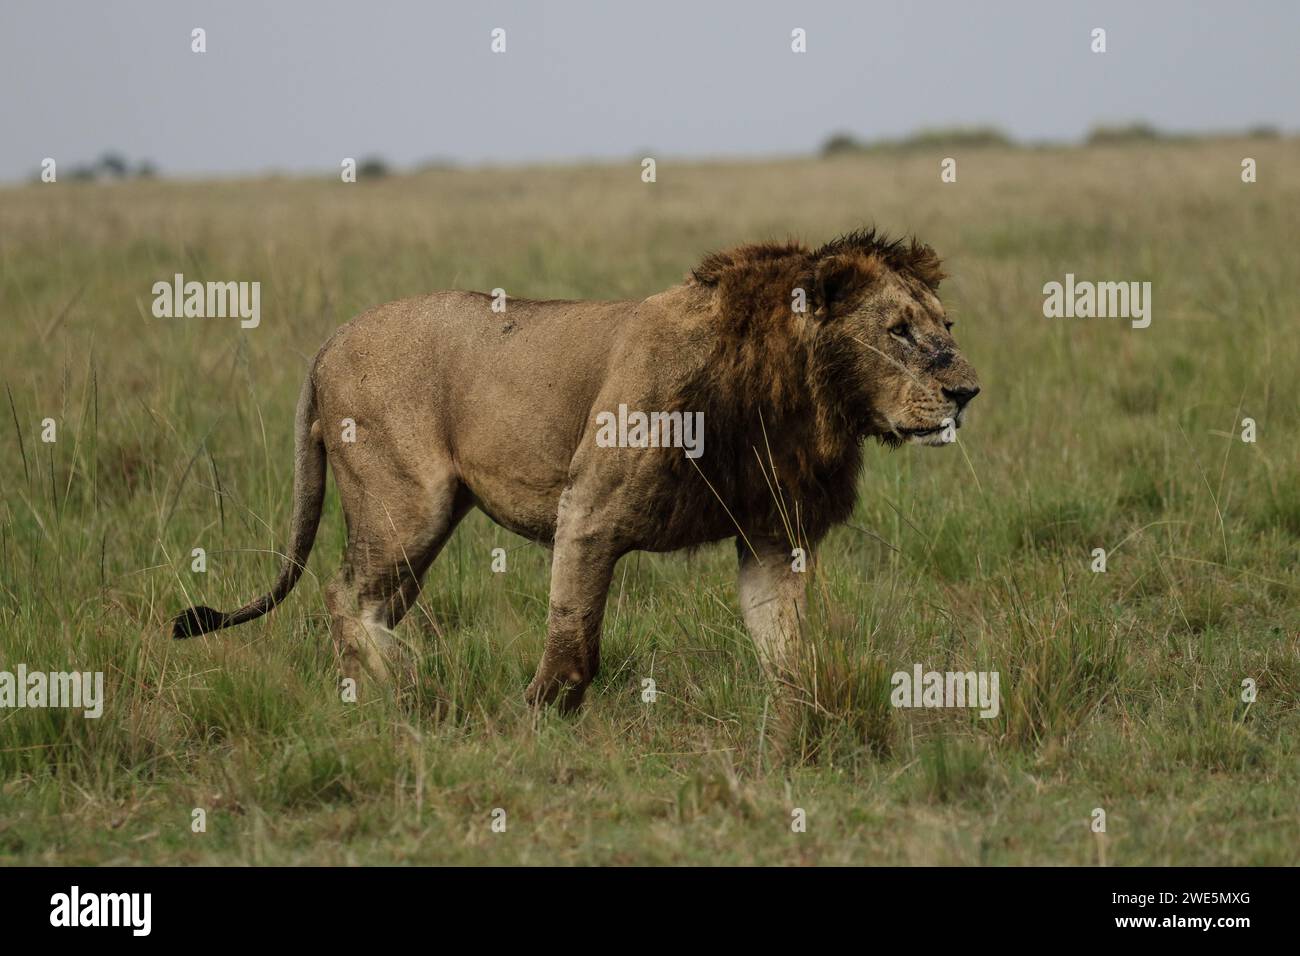 Un lion en herbe haute regarde vers le côté. Banque D'Images